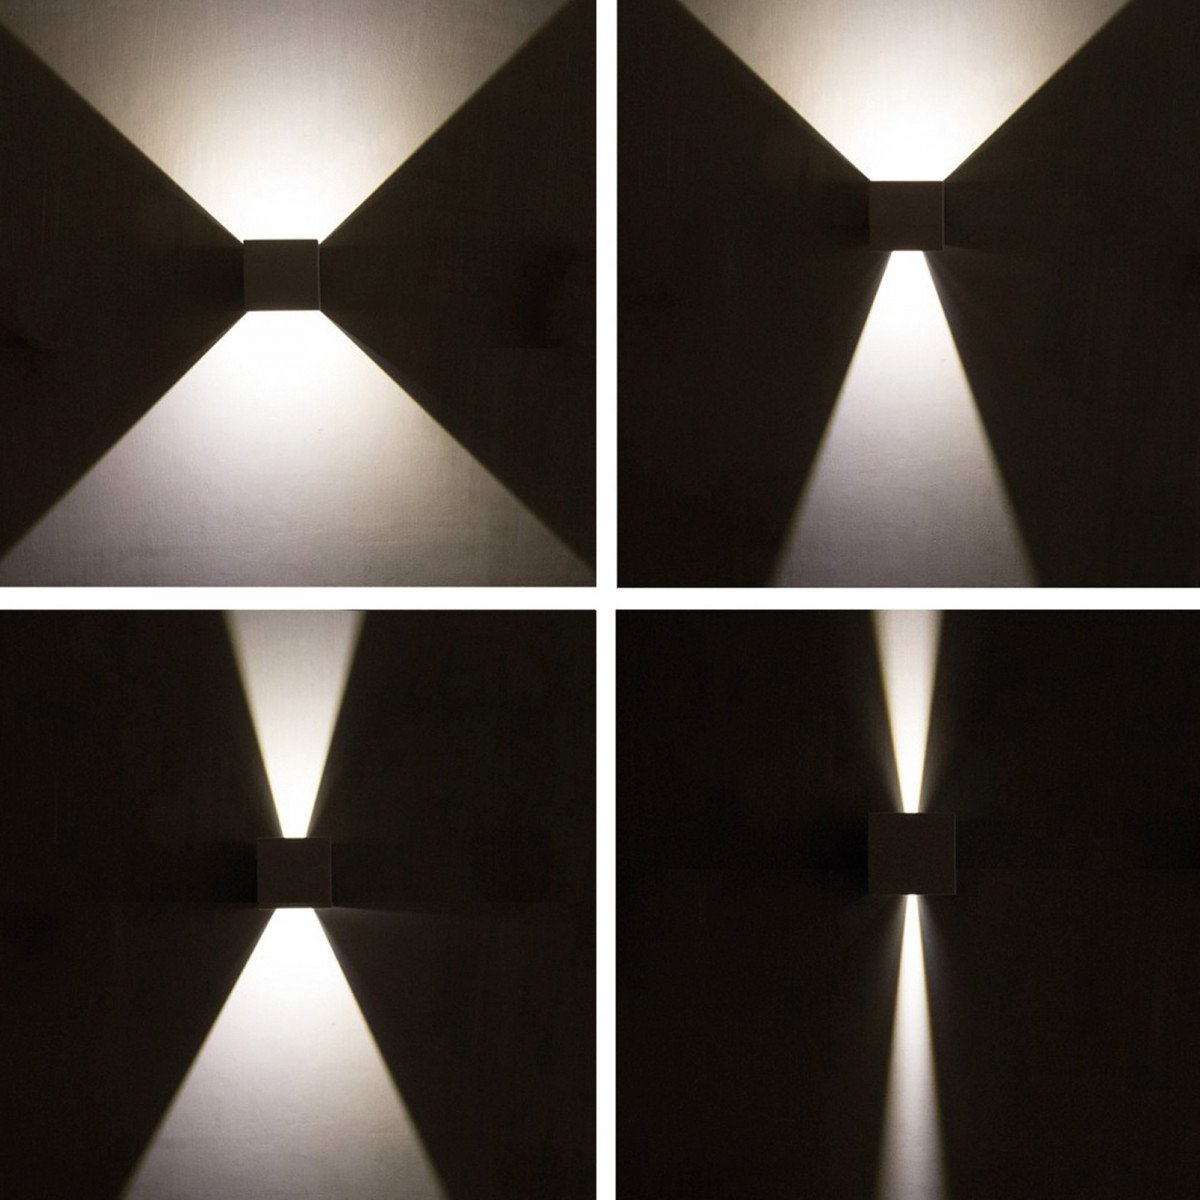 Modernen Wandleuchte Channel II LED Schwarz  Wandstrahler hat 4 Klappen, mit denen Sie sowohl den oberen und unteren Lichtstrahls einstellen können, verbauten LED's